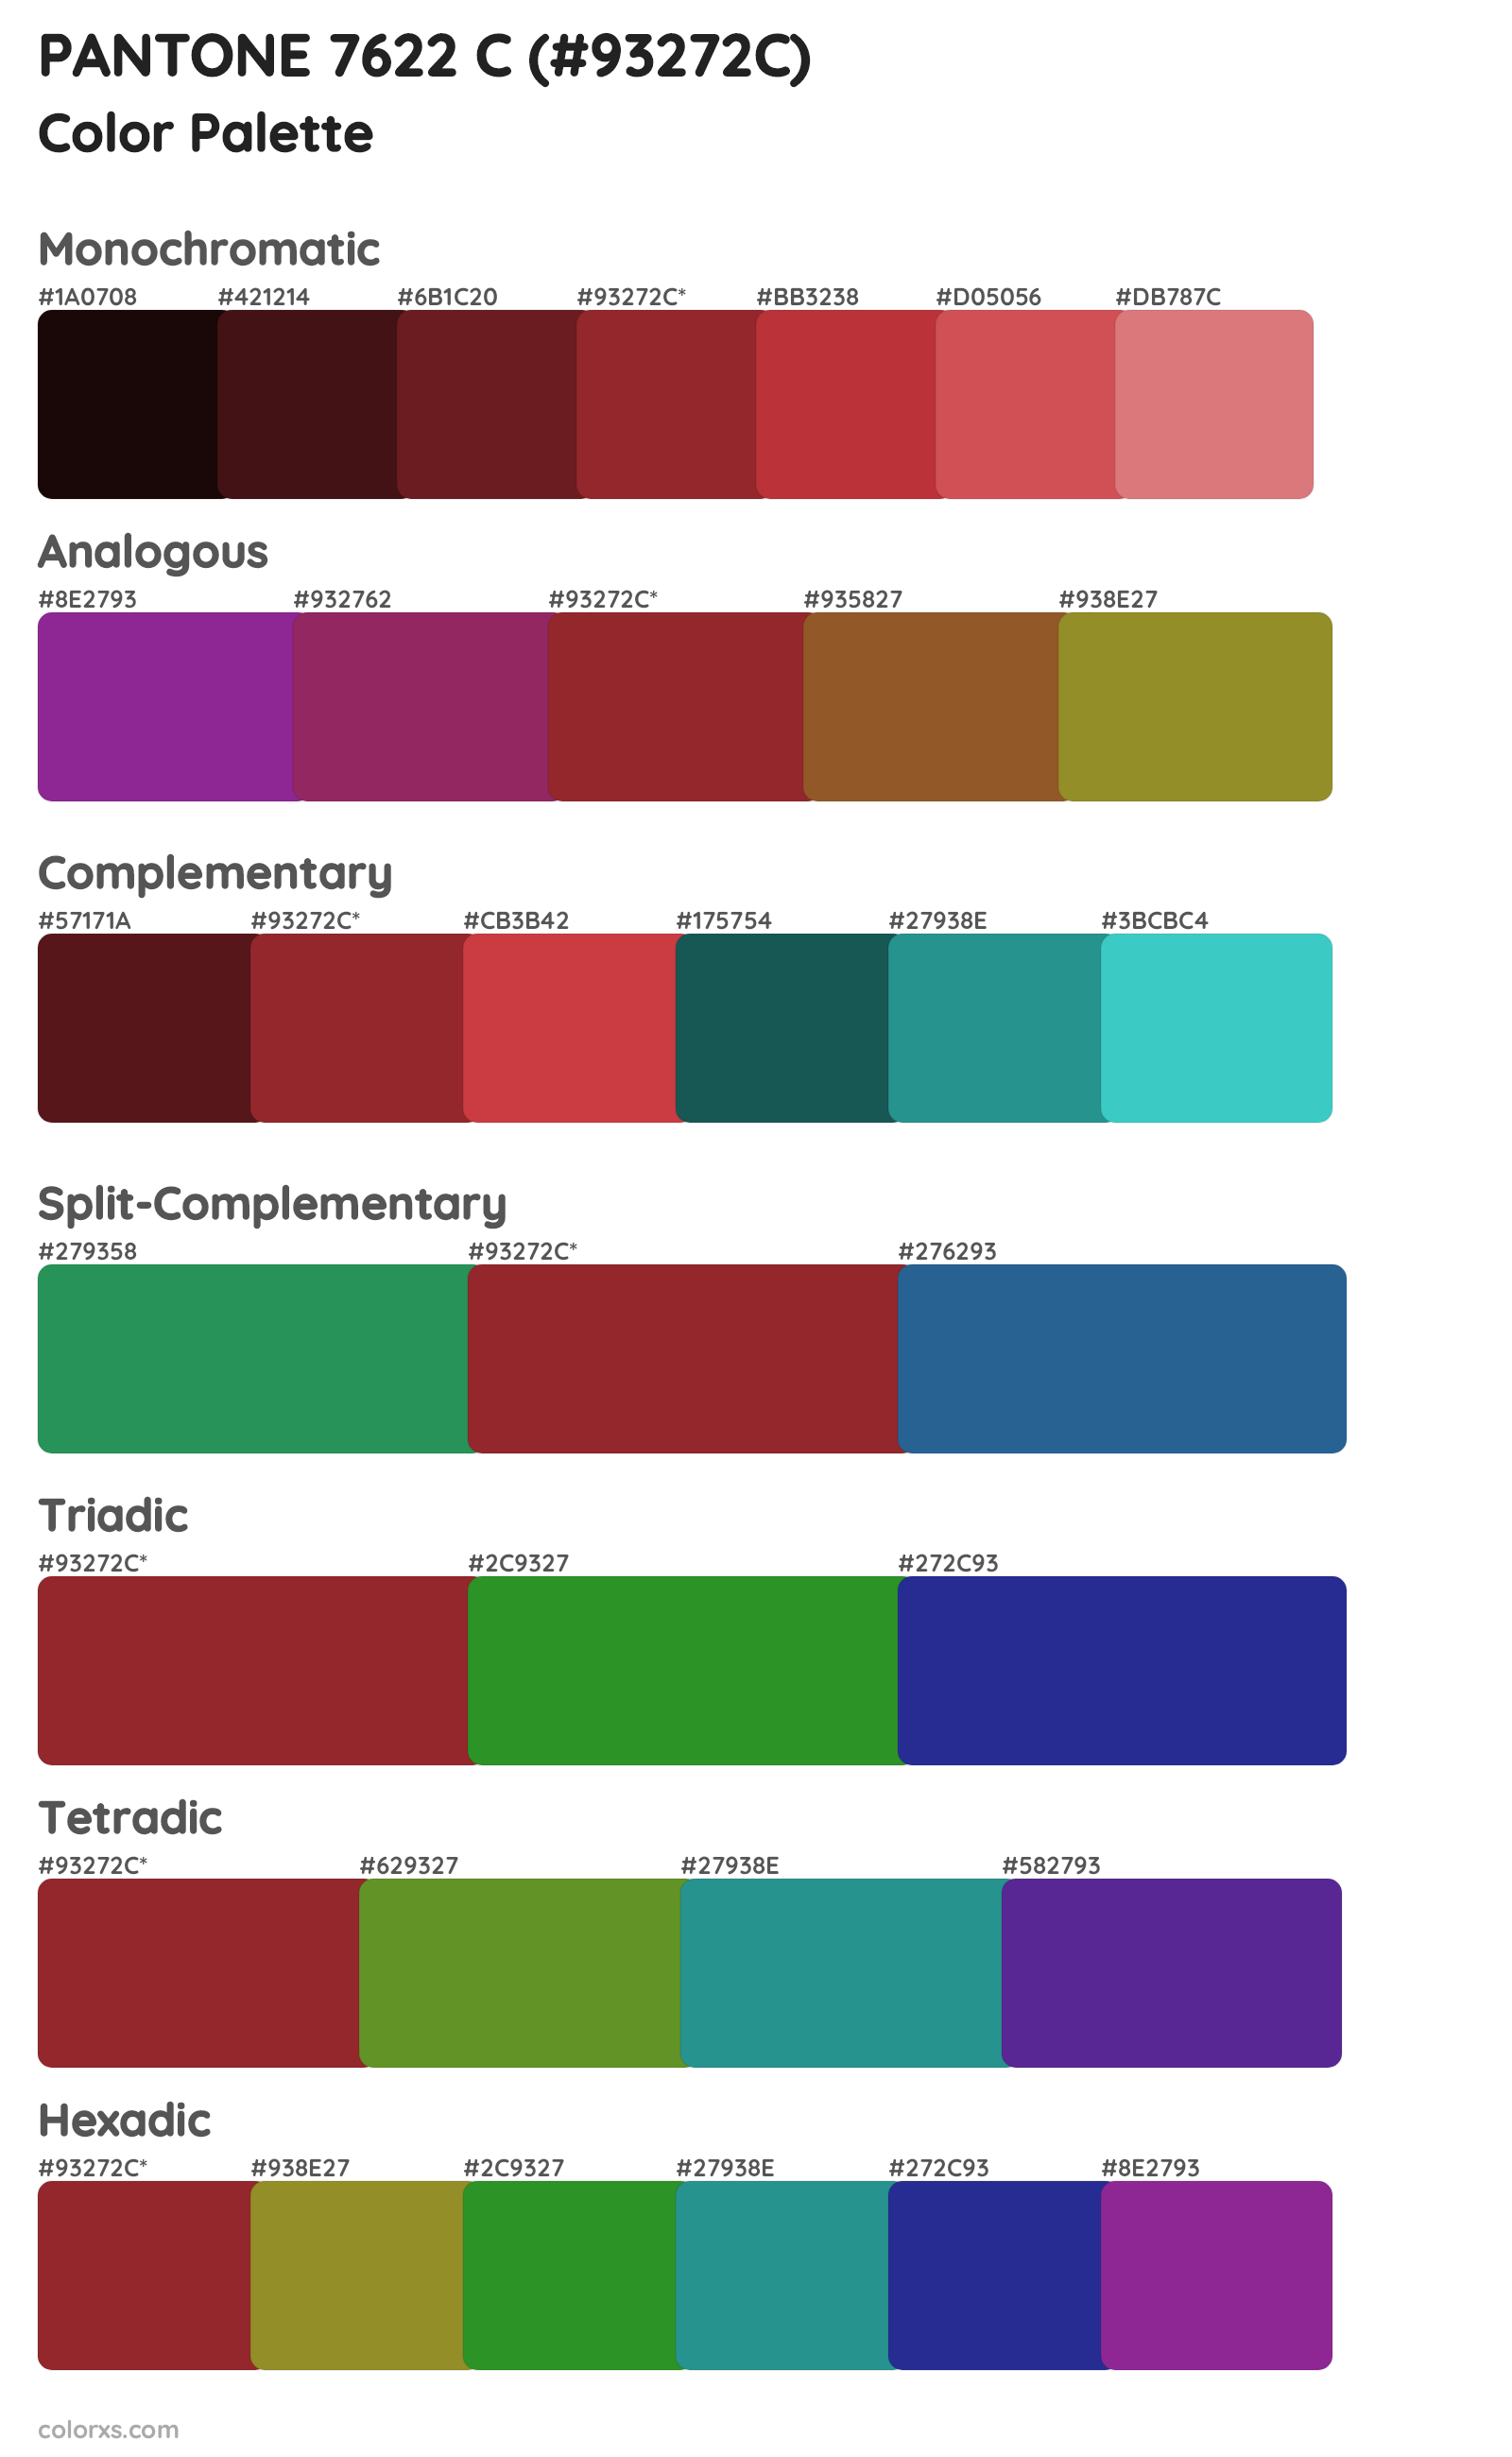 PANTONE 7622 C Color Scheme Palettes